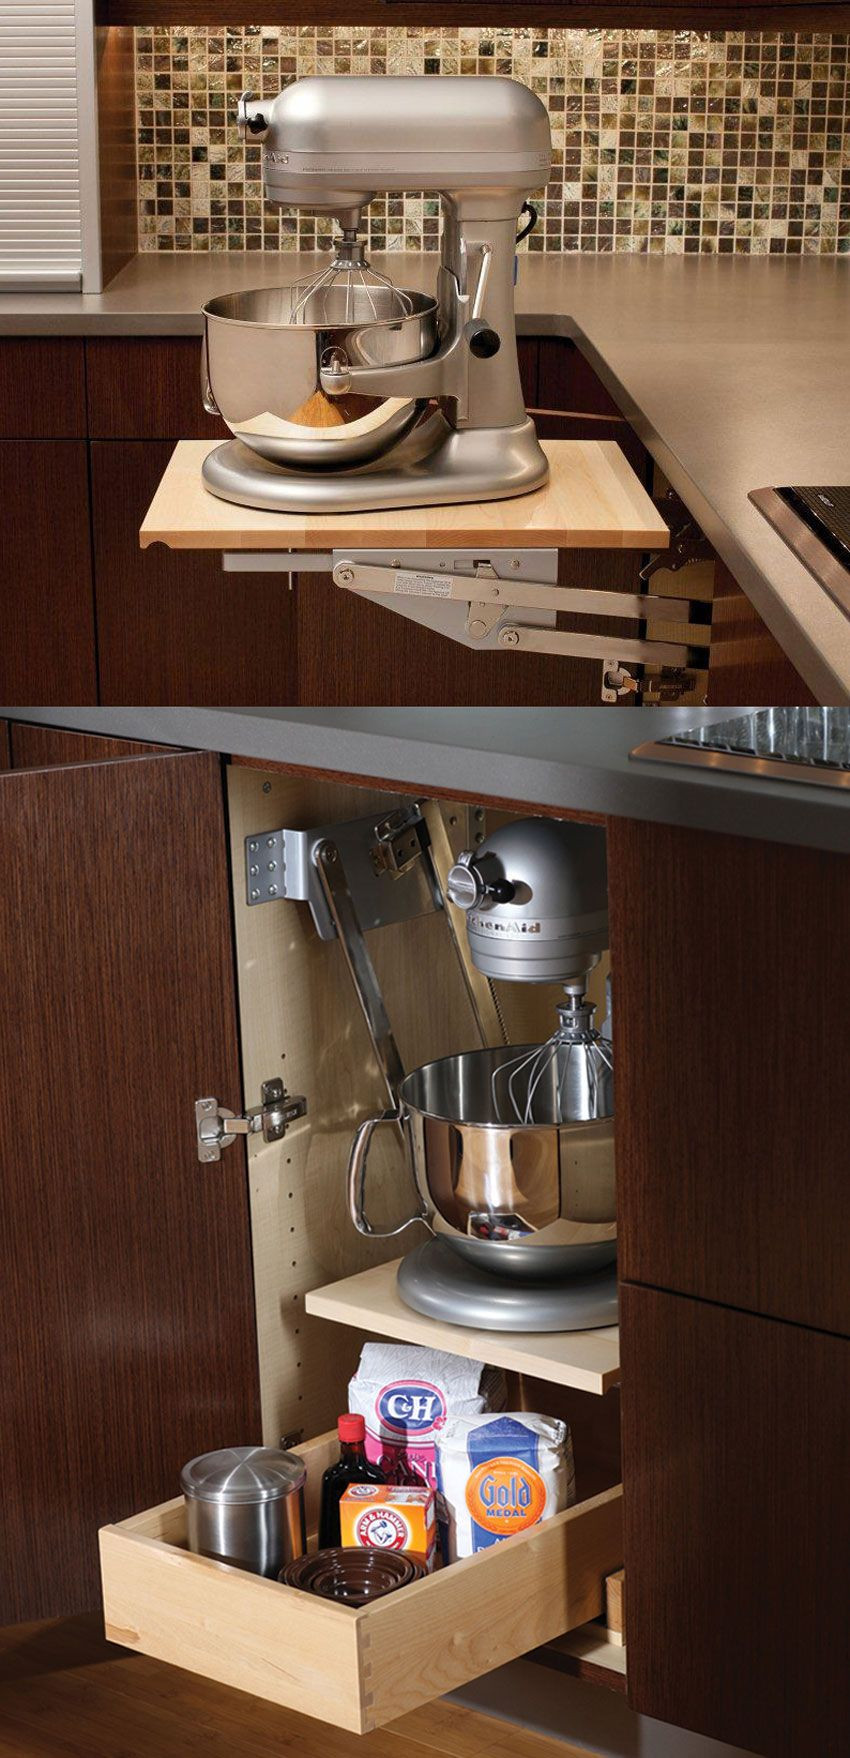 Kitchen Appliances Storage Cabinet
 Mixer Kitchen Appliance Storage Cabinet A mixer or other